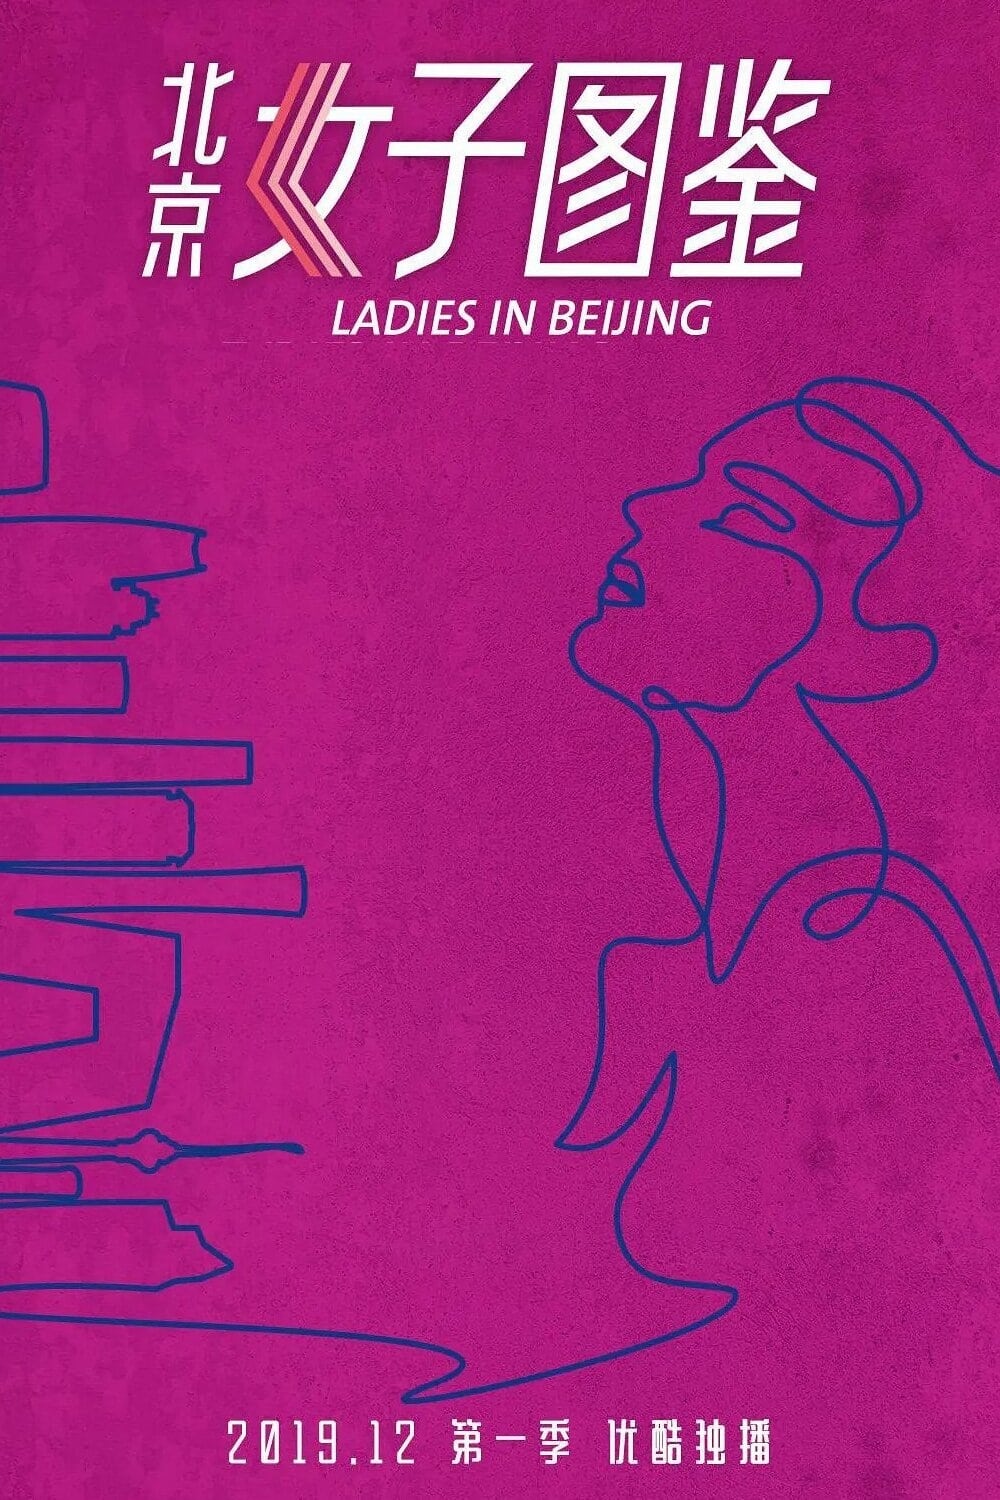 Ladies in Beijing